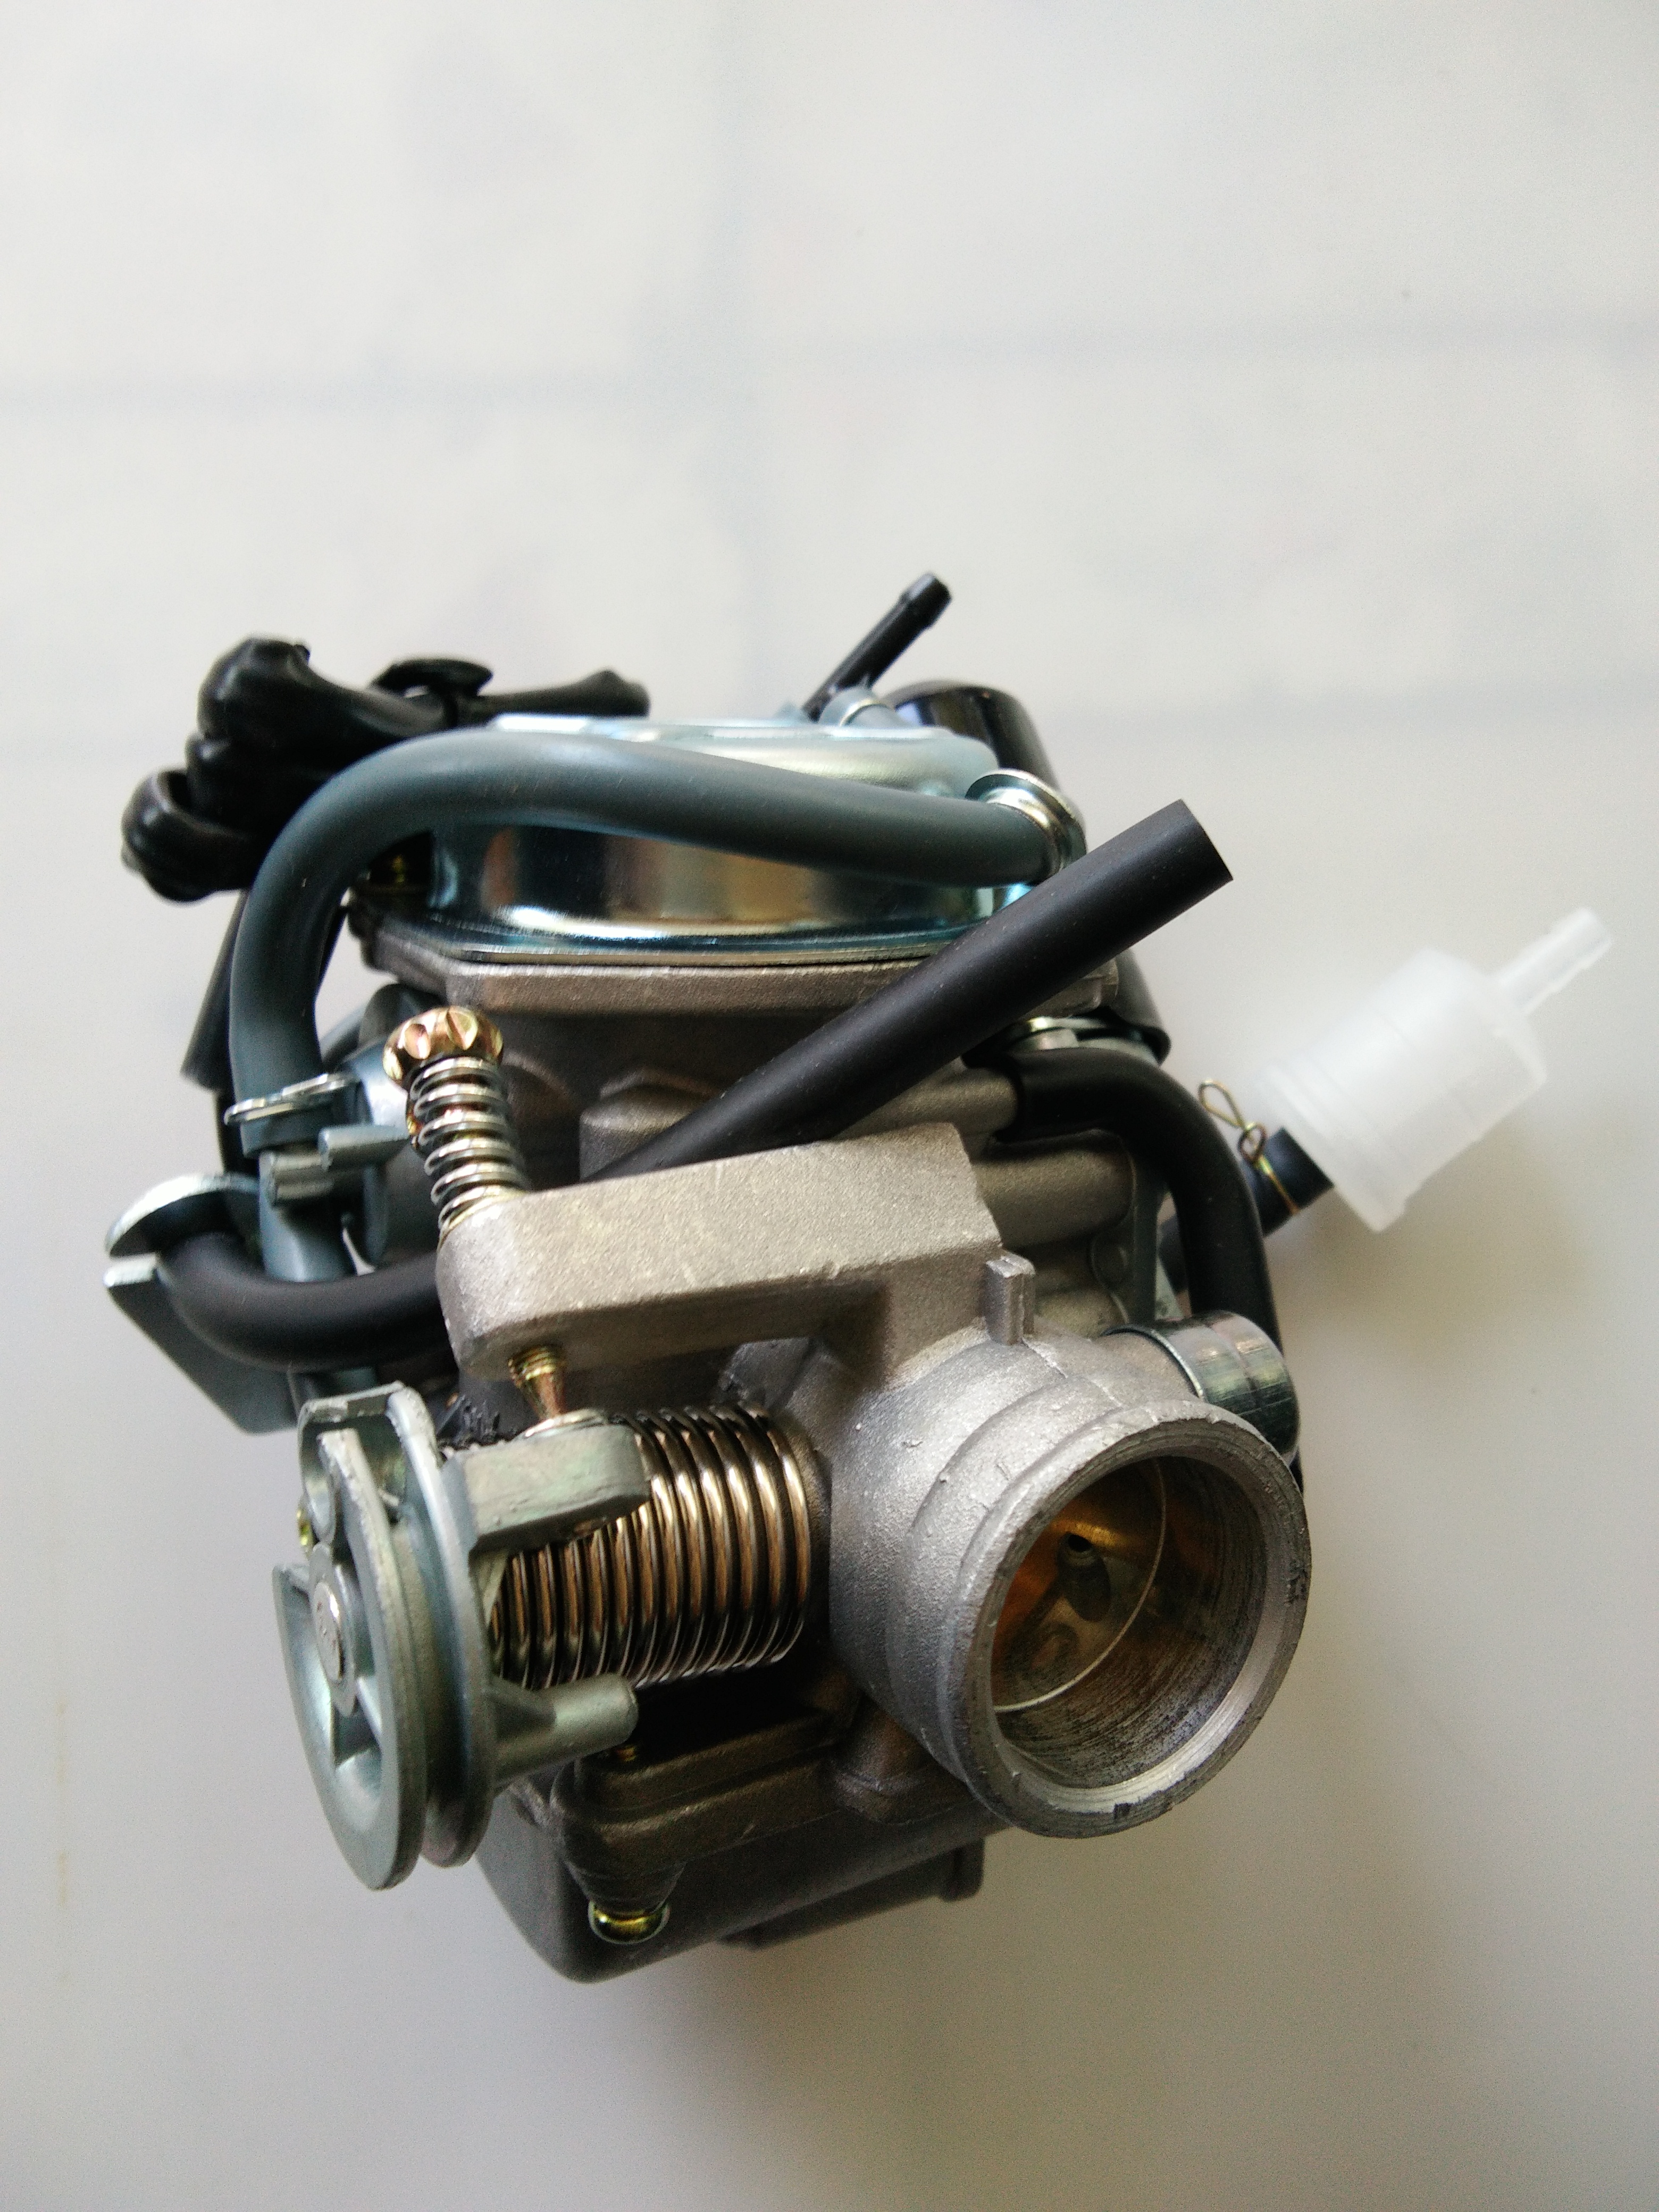 化油器踏板助力车通用化油器GY6125\150化油器PD24J型化油器